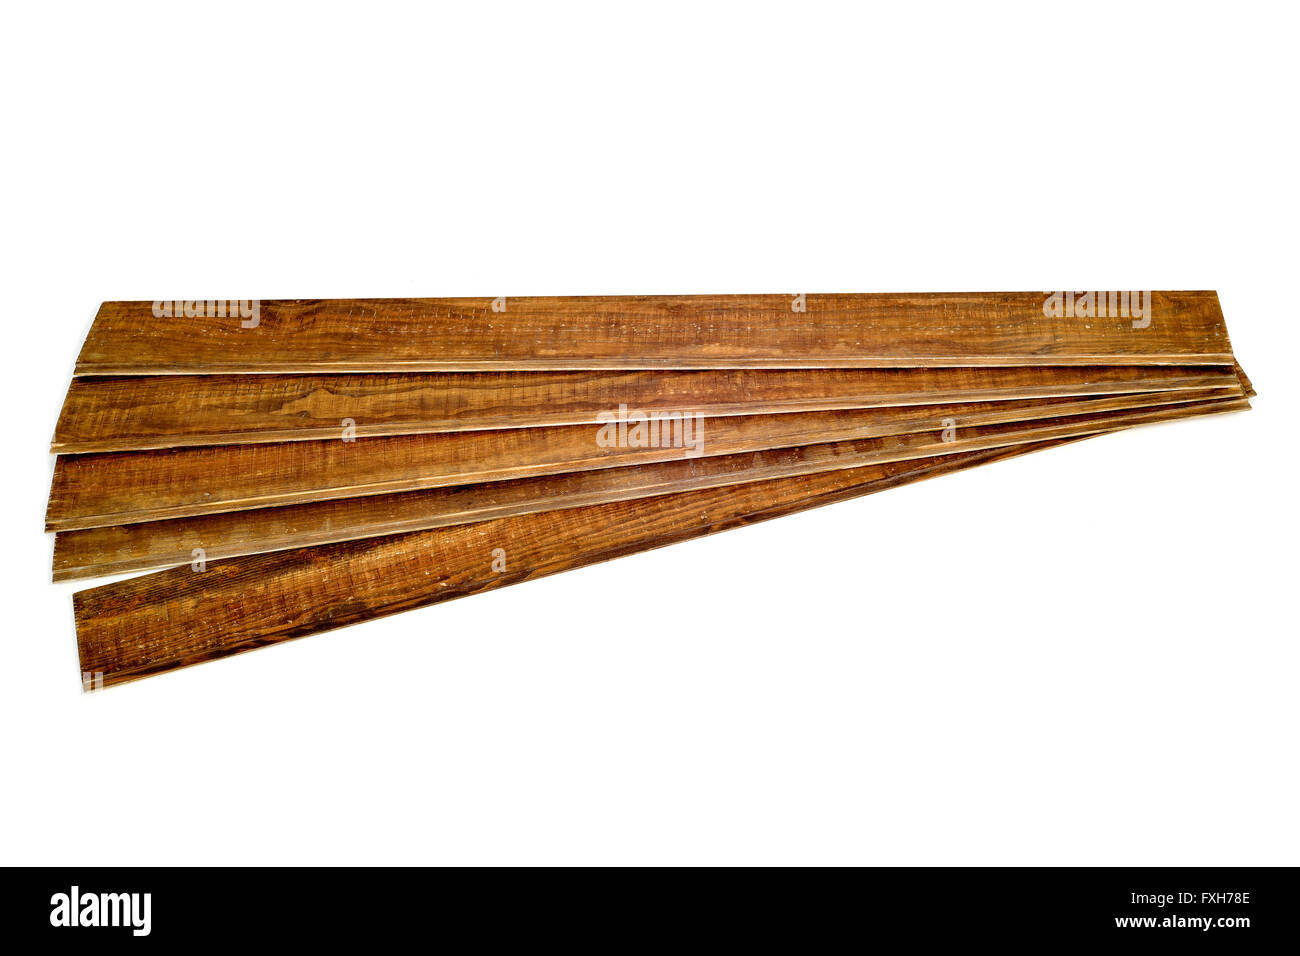 Alcuni rustici listoni in legno su uno sfondo bianco Foto Stock